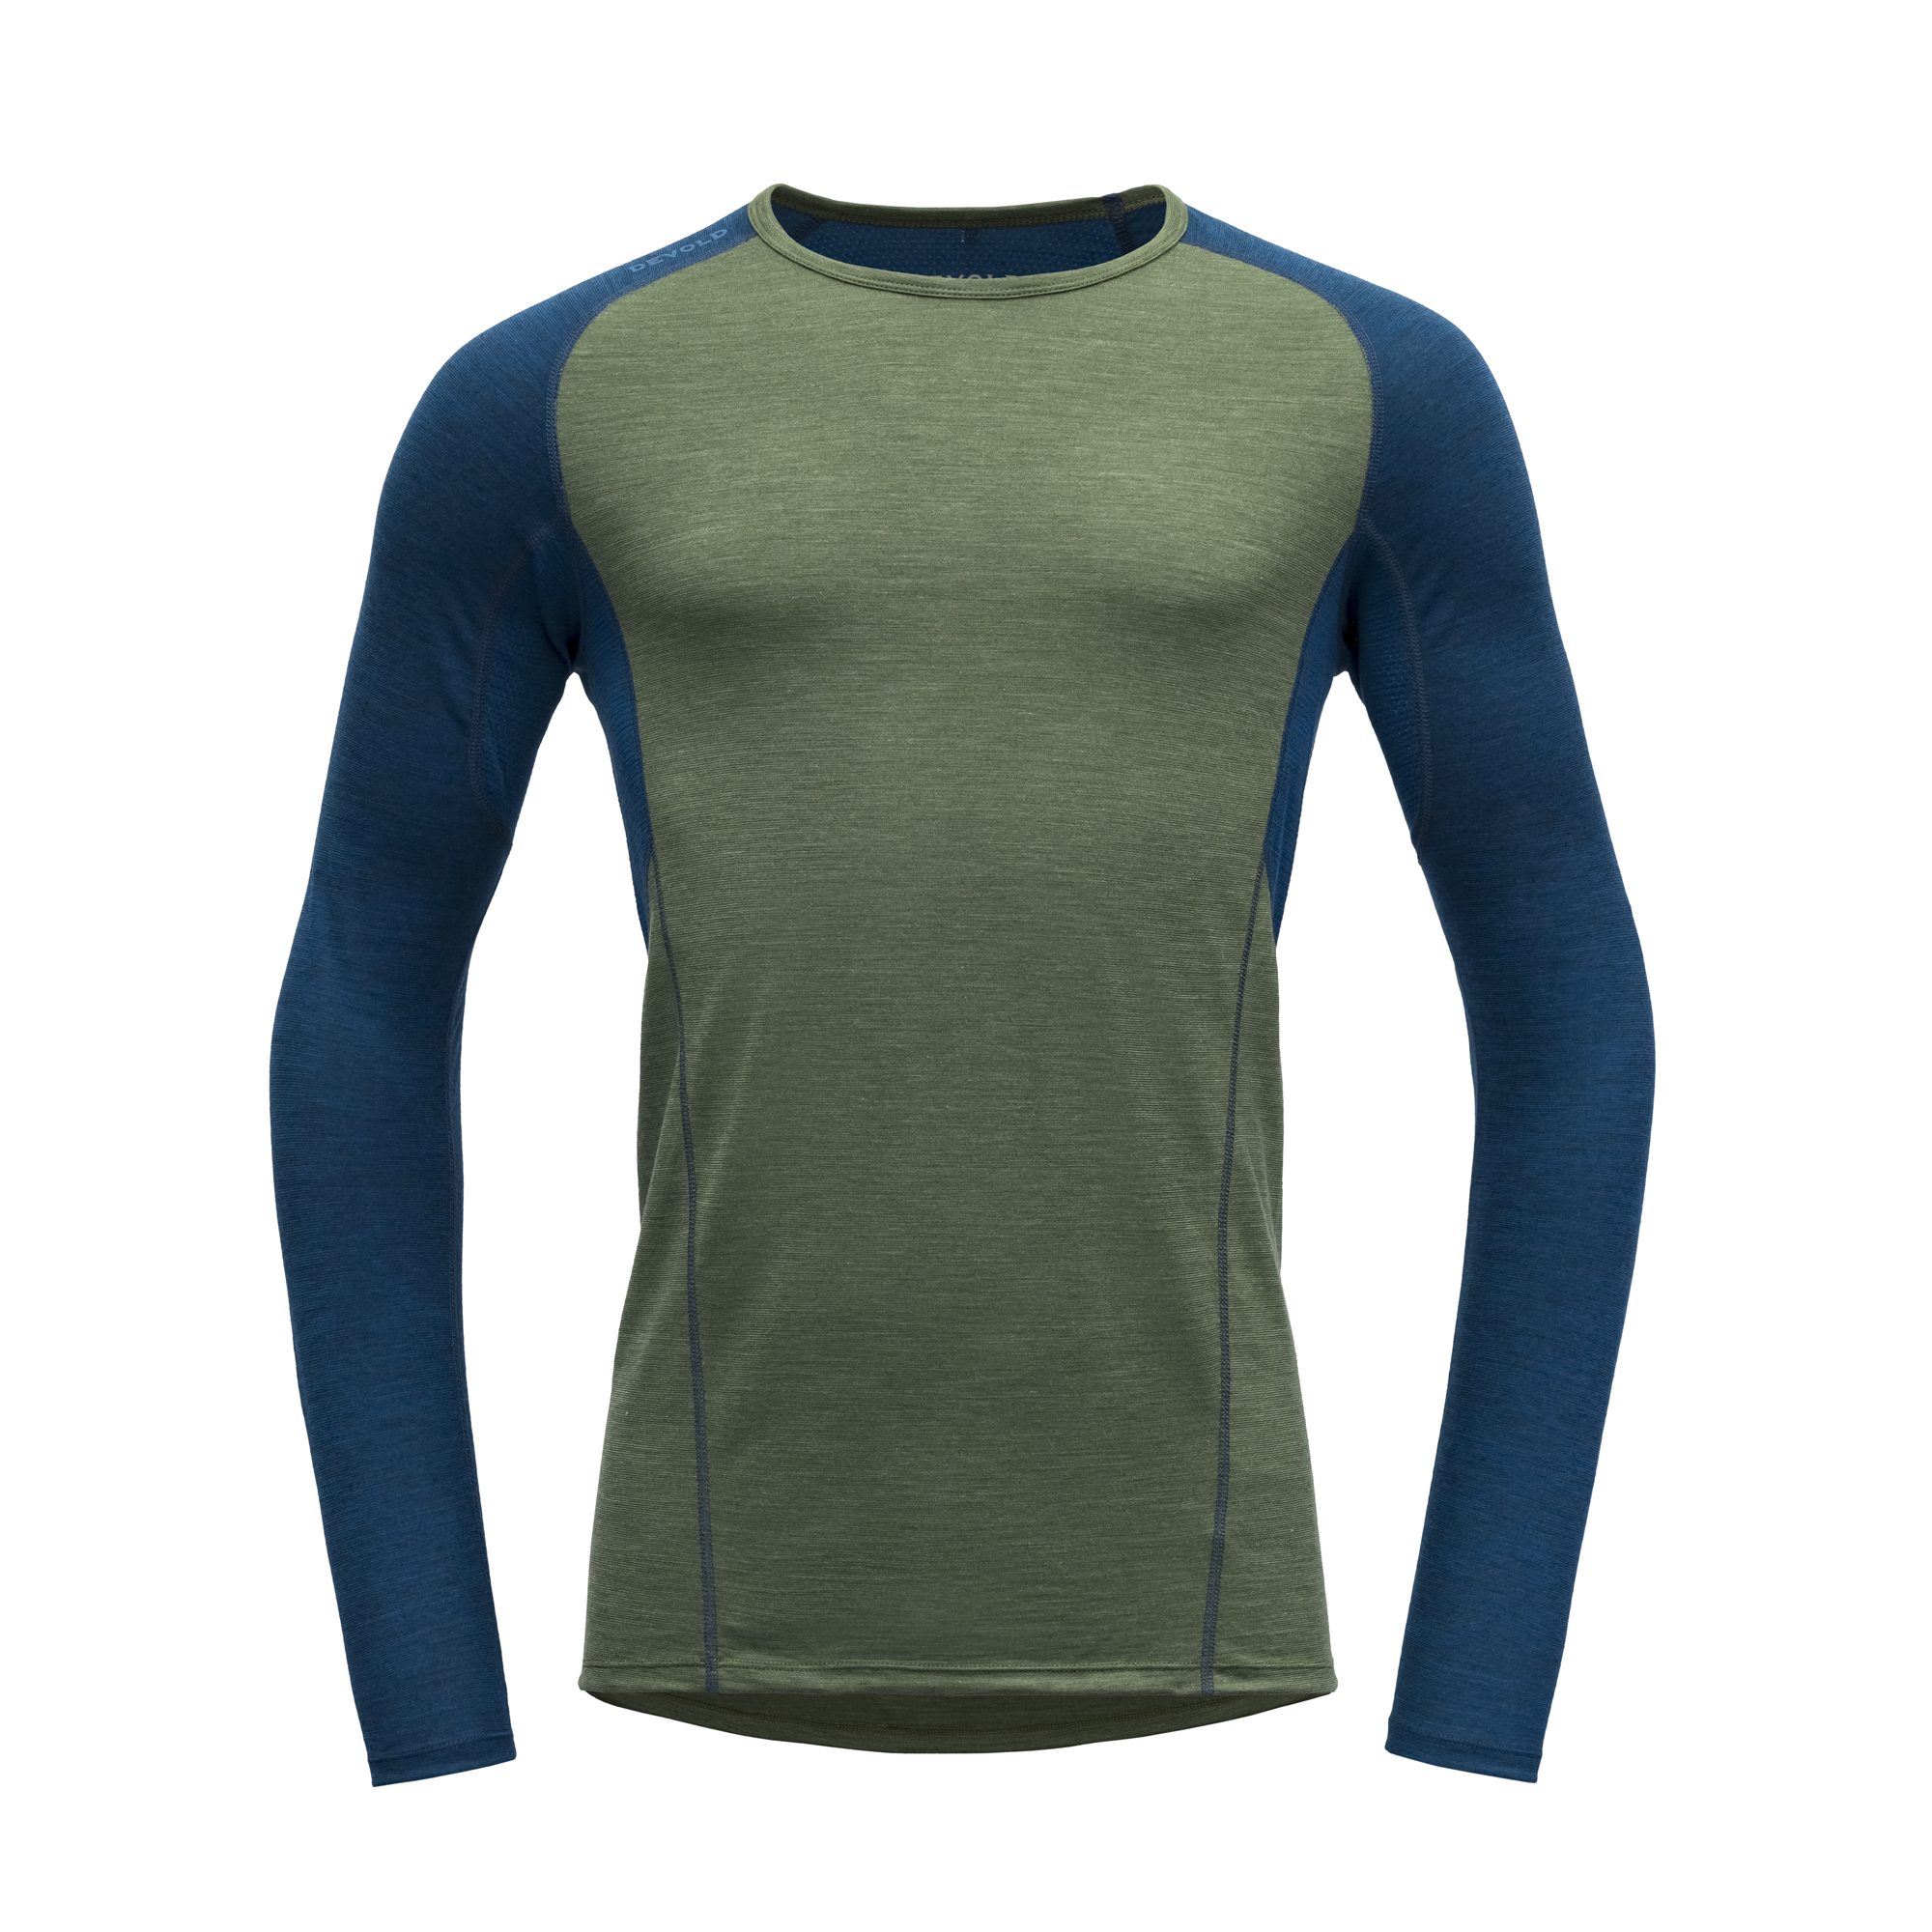 Devold Merino 130 tričko s dlouhým rukávem - pánské - zelená/modrá Velikost: M